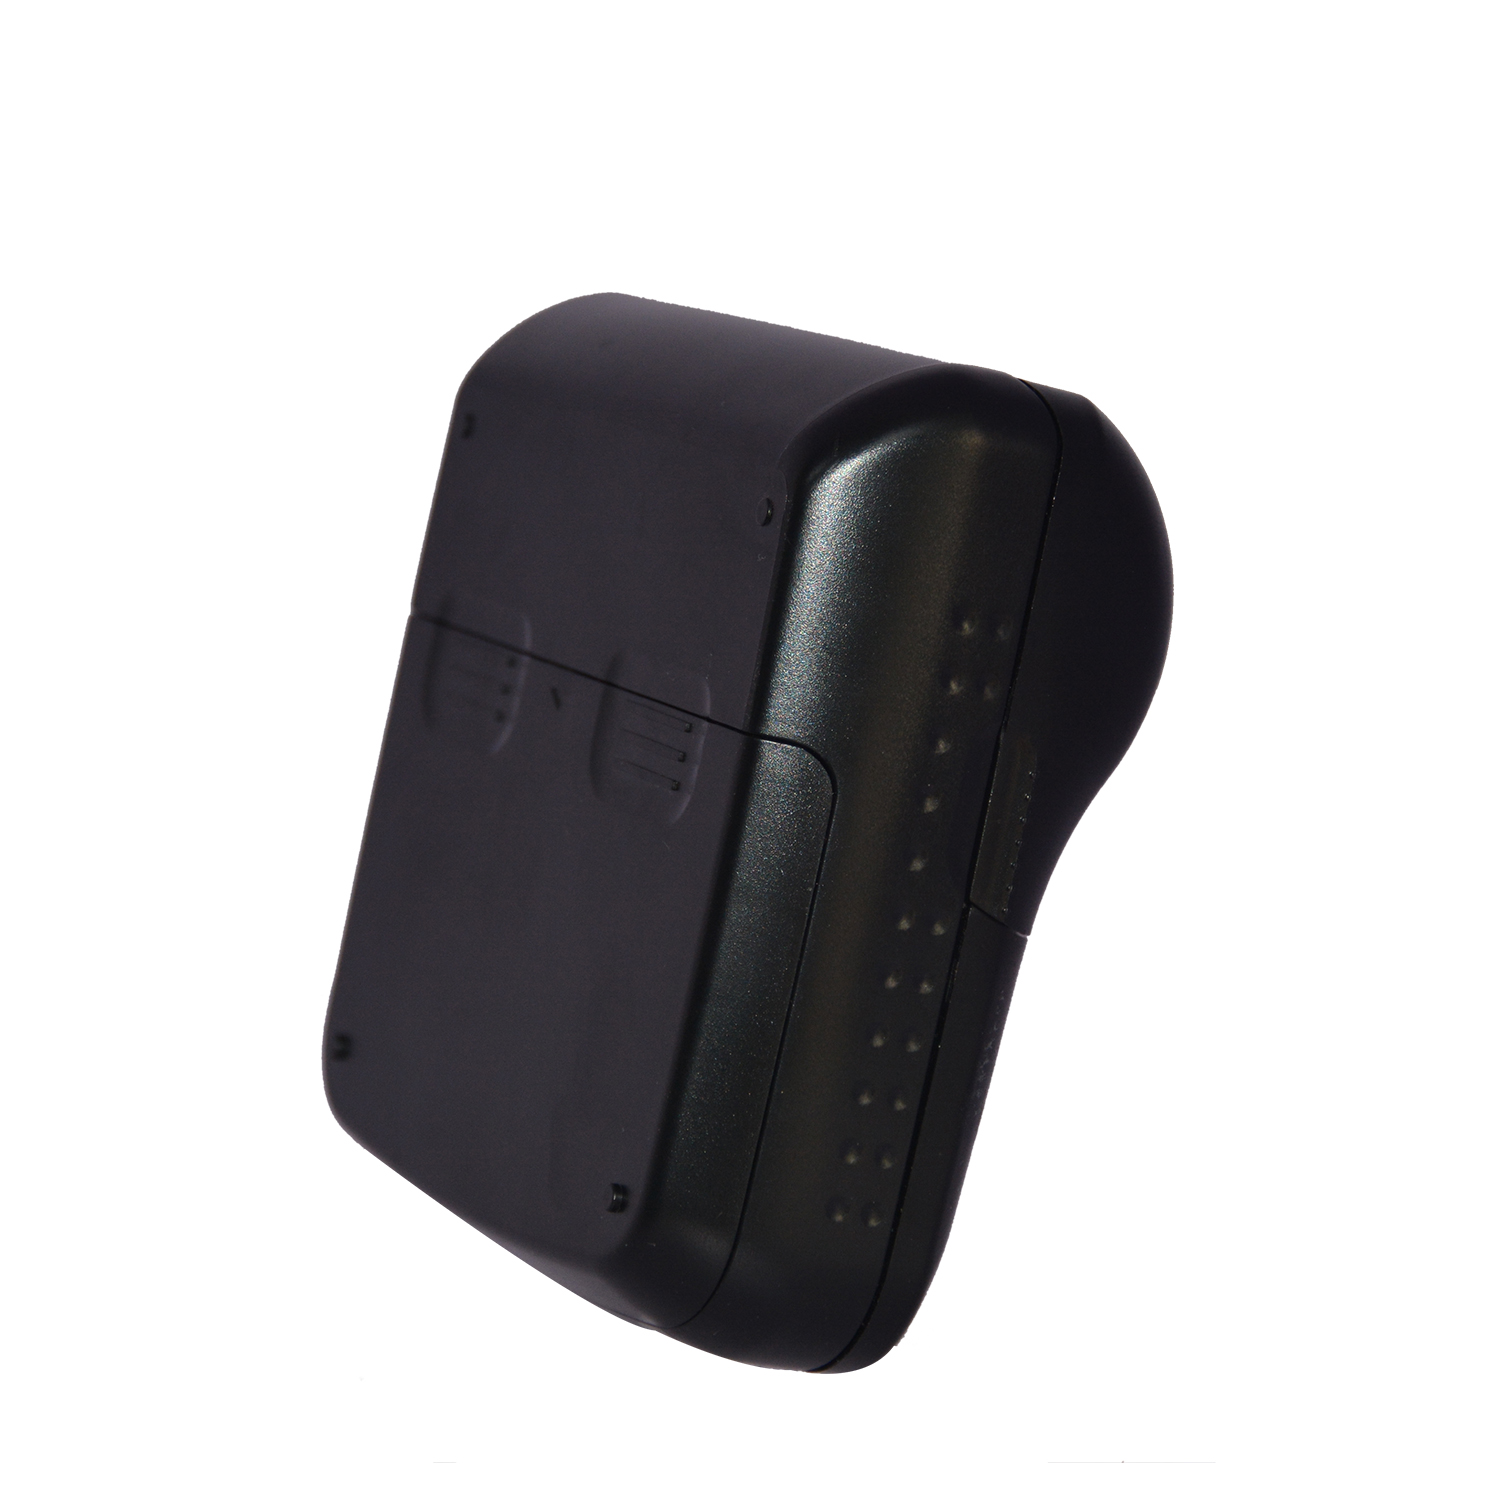 Доступный портативный термопринтер чеков HCC-T9 с Bluetooth и Wi-Fi шириной 80 мм